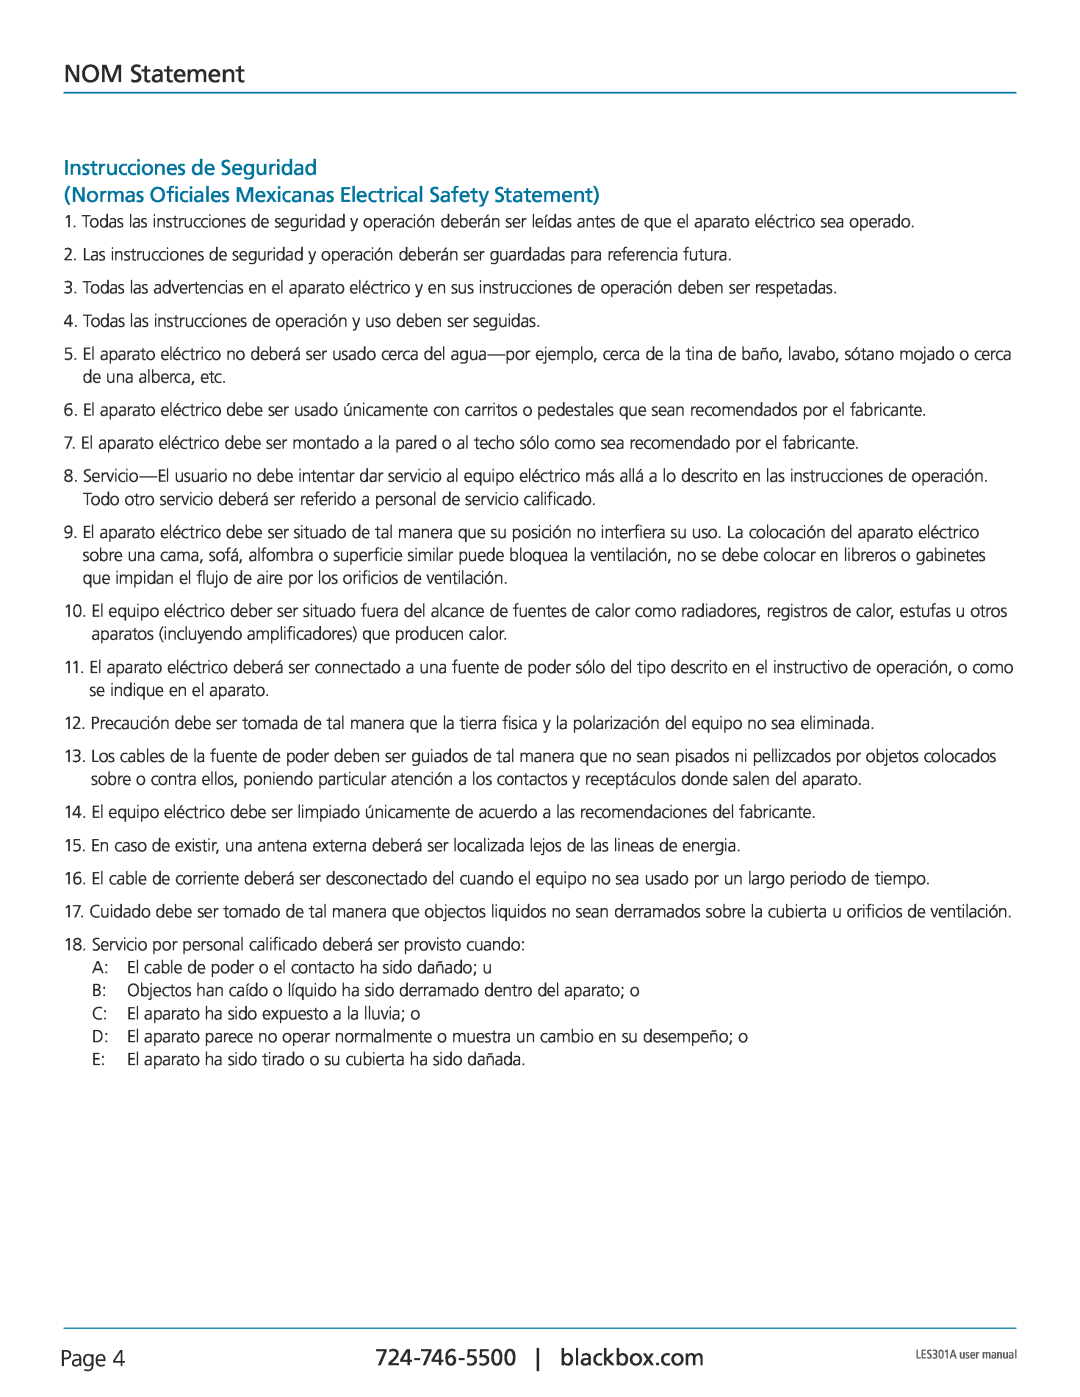 Black Box RS-422 NOM Statement, Page, Instrucciones de Seguridad, Normas Oficiales Mexicanas Electrical Safety Statement 